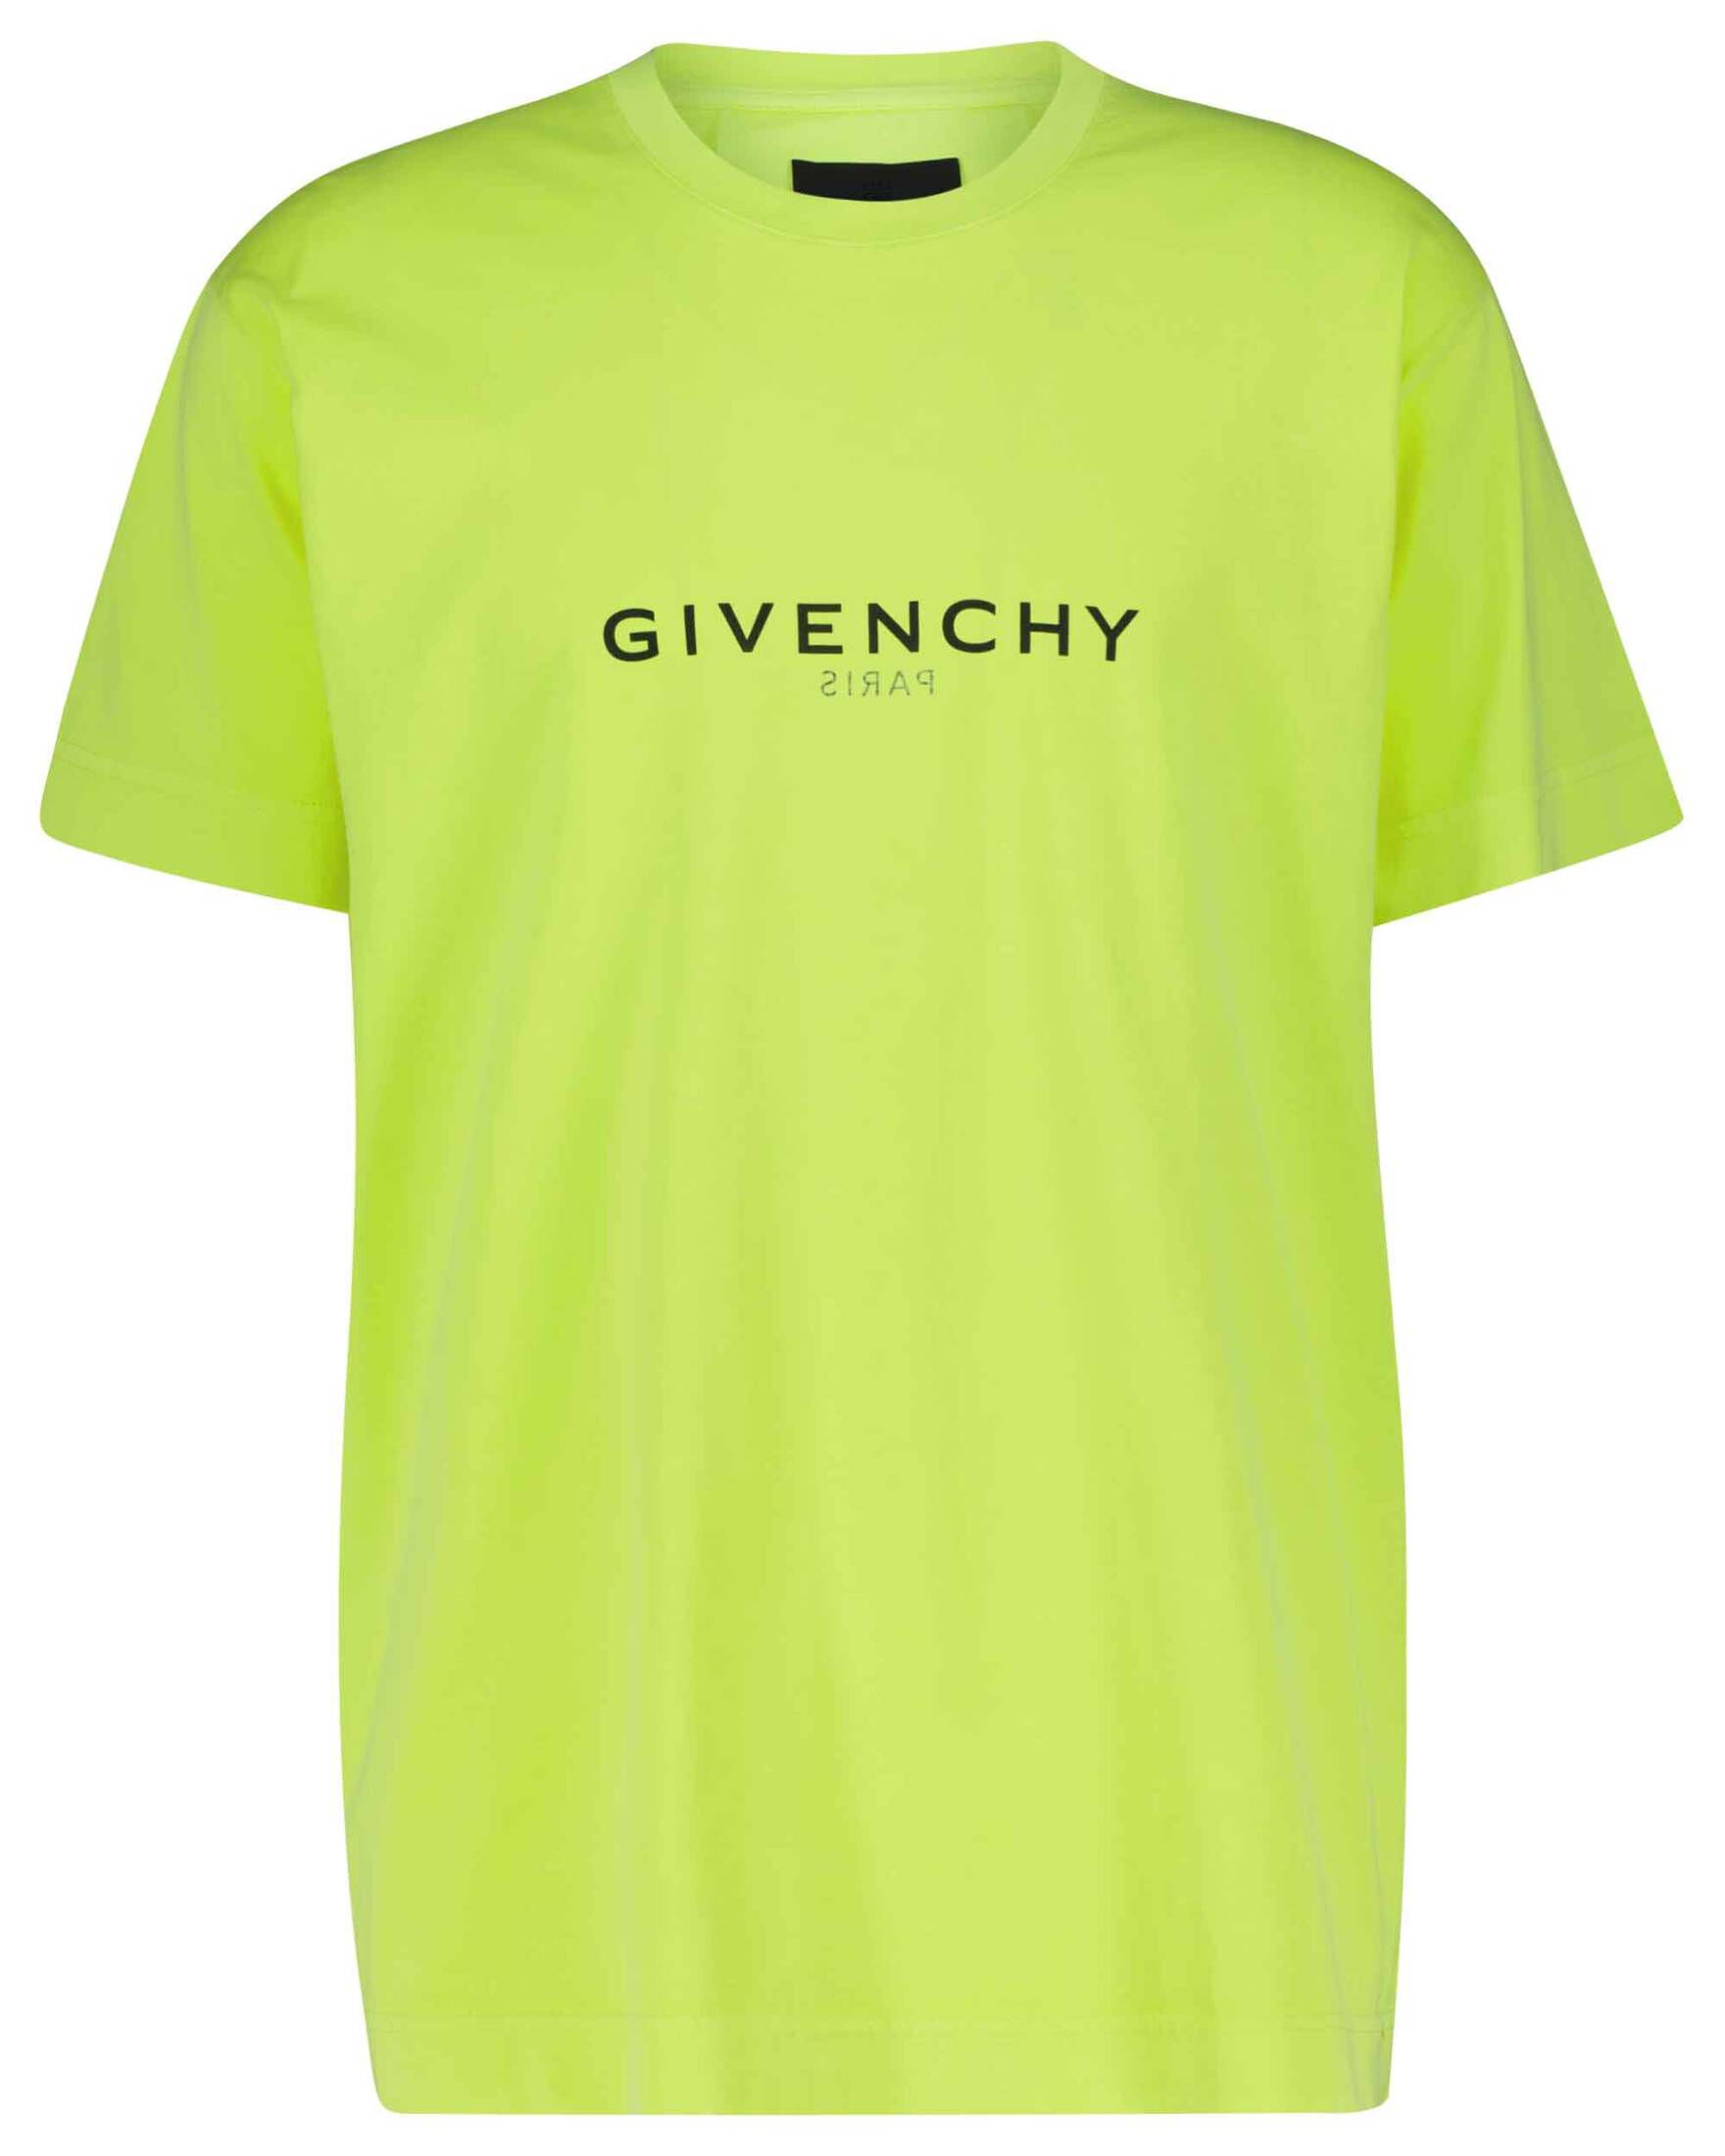 T-Shirts Givenchy Herren L weiß Herren Kleidung Givenchy Herren T-Shirts & Polos Givenchy Herren T-Shirts Givenchy Herren T-Shirts GIVENCHY 3 